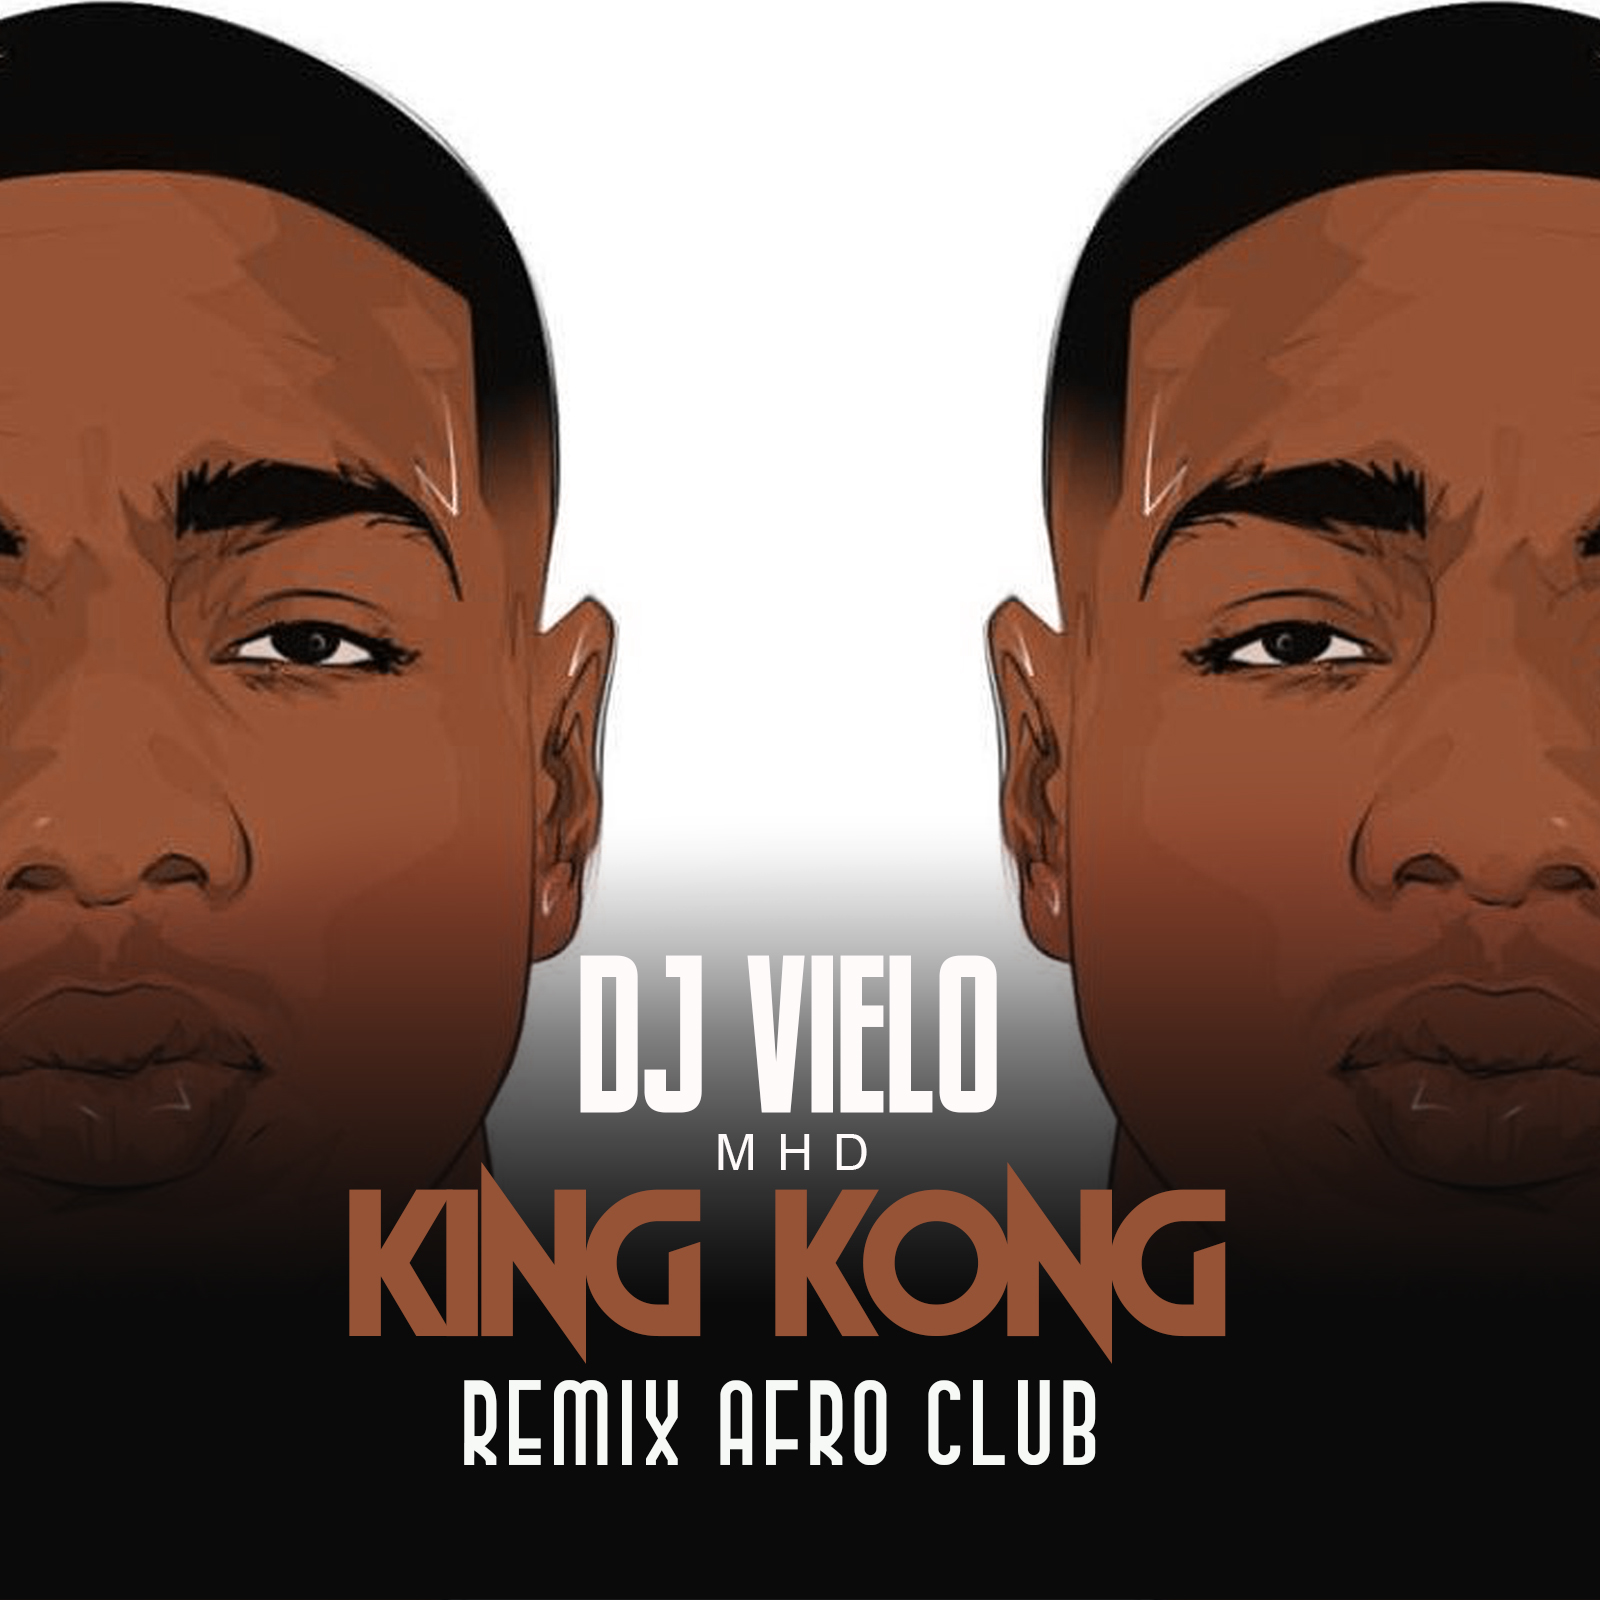 Khoasolla Dj Vielo X MHD - AFRO TRAP Part.11 (King Kong) Remix Afro Club DISPO SUR SPOTIFY, DEEZER, ITUNES